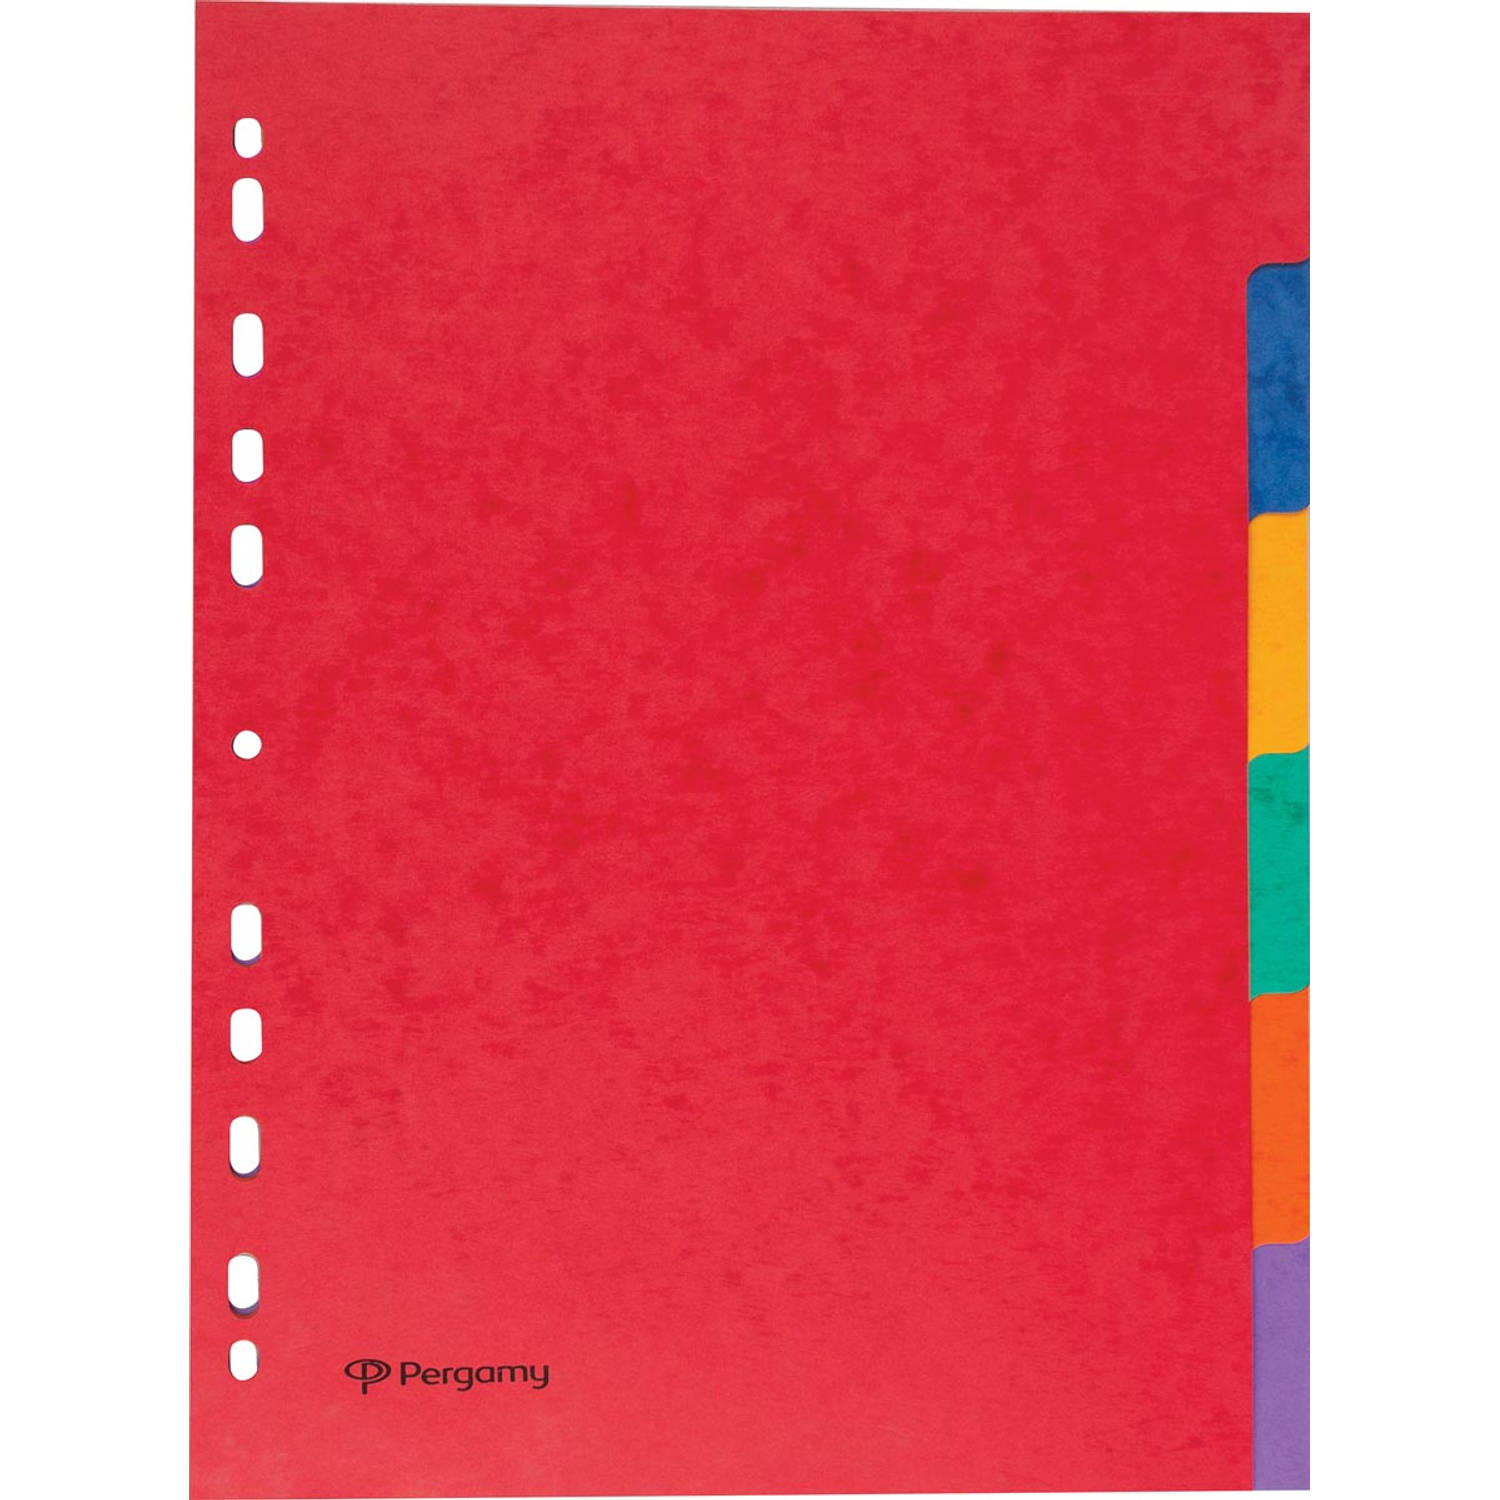 Pergamy tabbladen ft A4, 11-gaatsperforatie, stevig karton, geassorteerde kleuren, 6 tabs 50 stuks